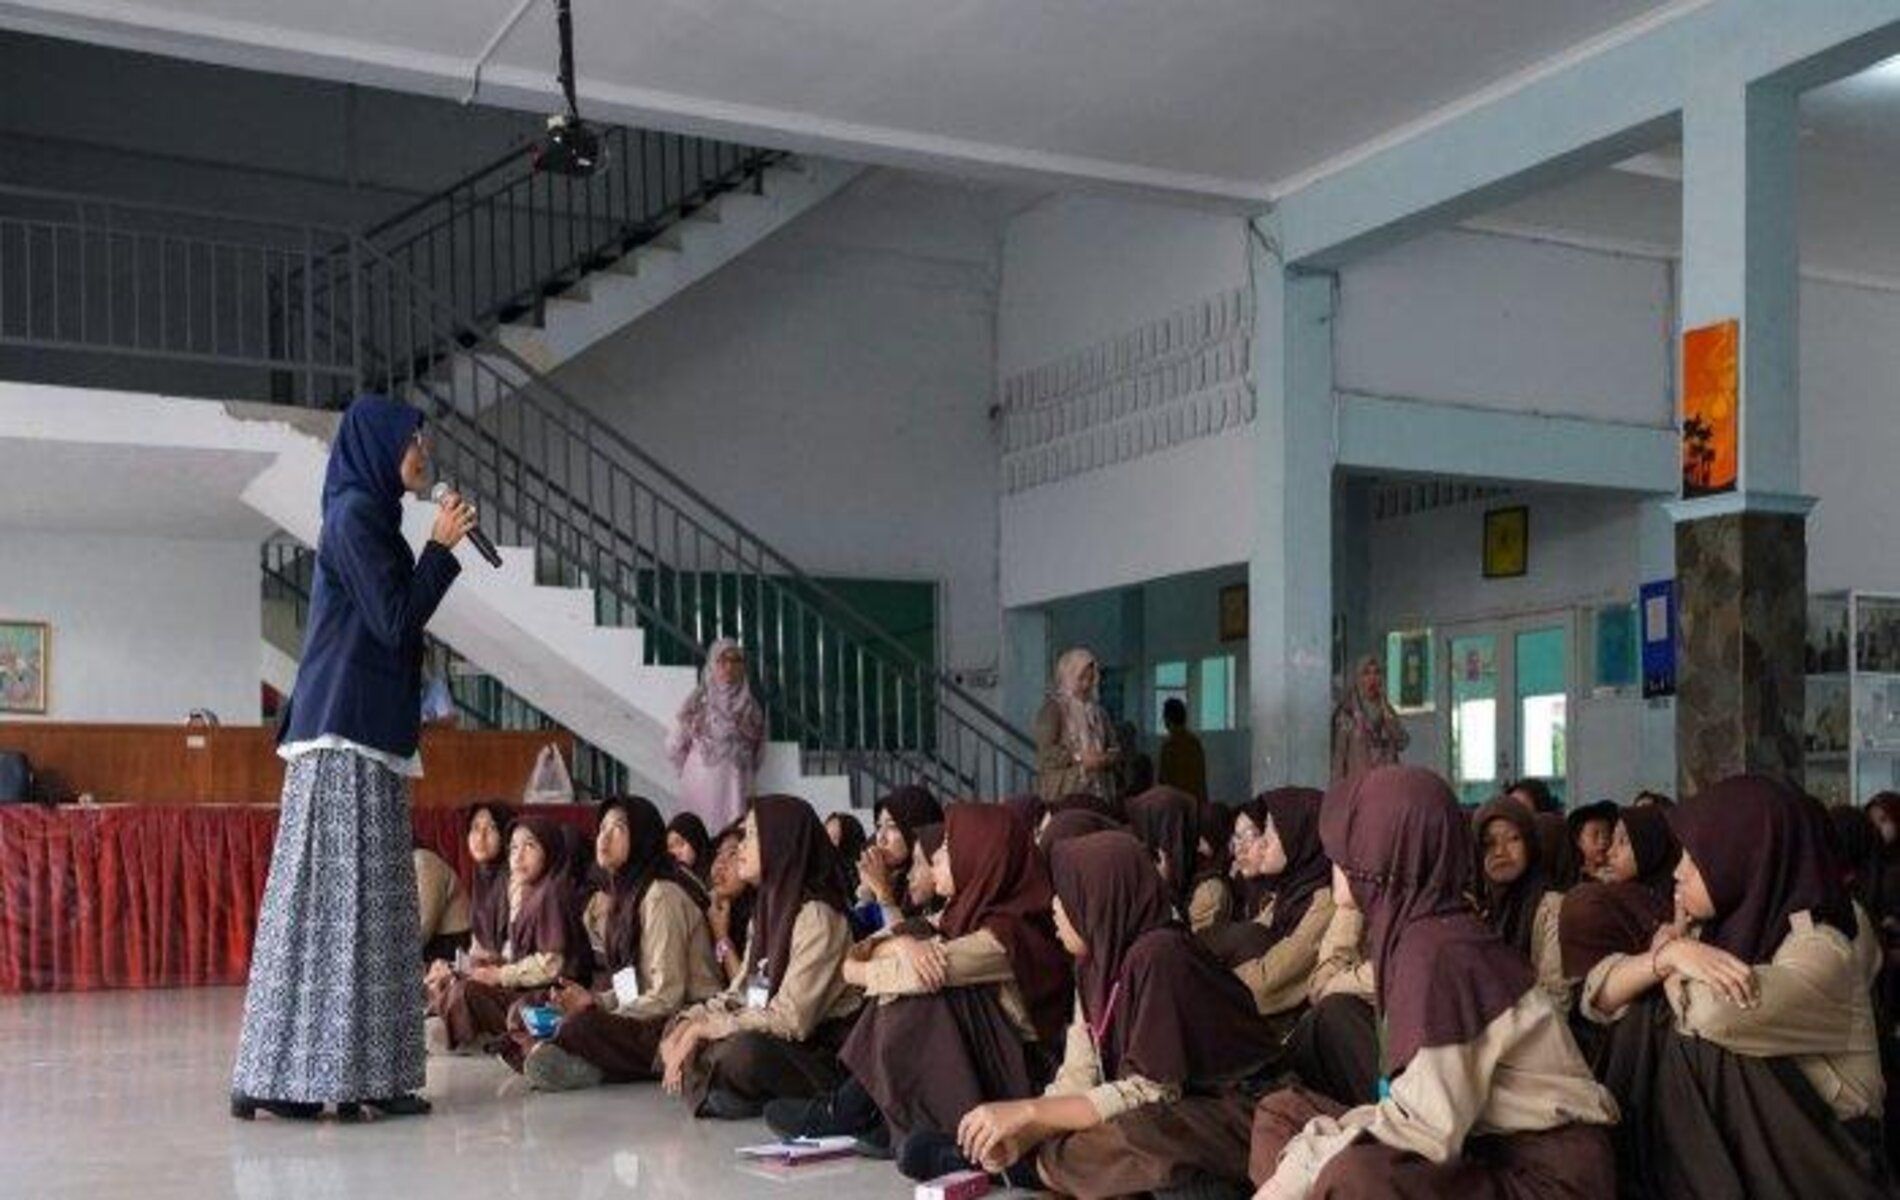 Anggota DPRD Kota Bogor yang juga sekretaris Komisi I, Anna Mariam Fadhilah berkesempatan menyampaikan pendidikan Pancasila kepada siswa-siswi kelas 7 SMPN 12 Kota Bogor.